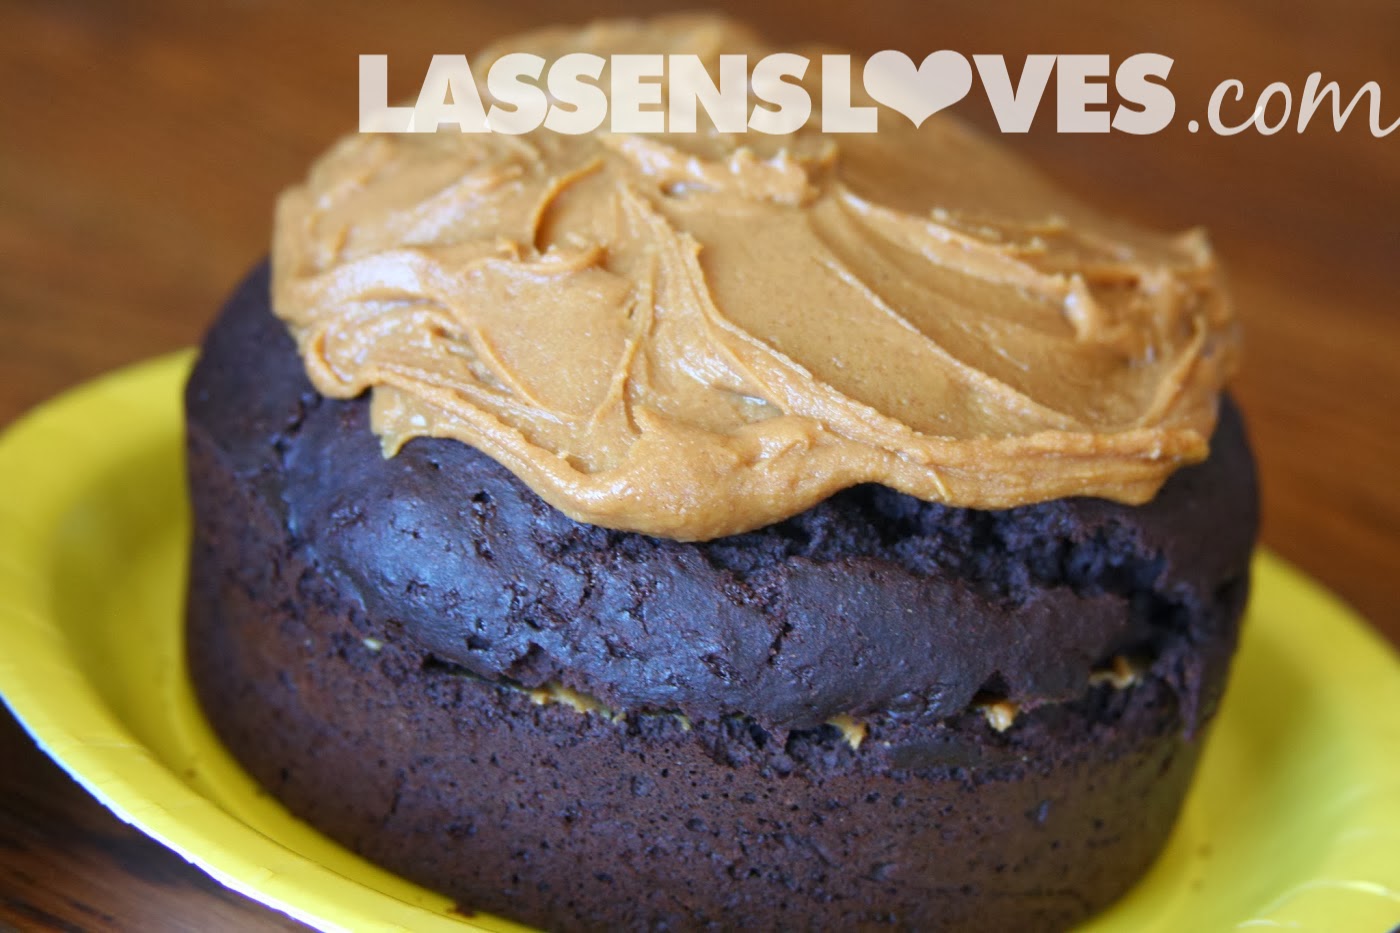 lassensloves.com, Lassen's, Lassens, Arnel's Gluten+Free, Baking+Mixes